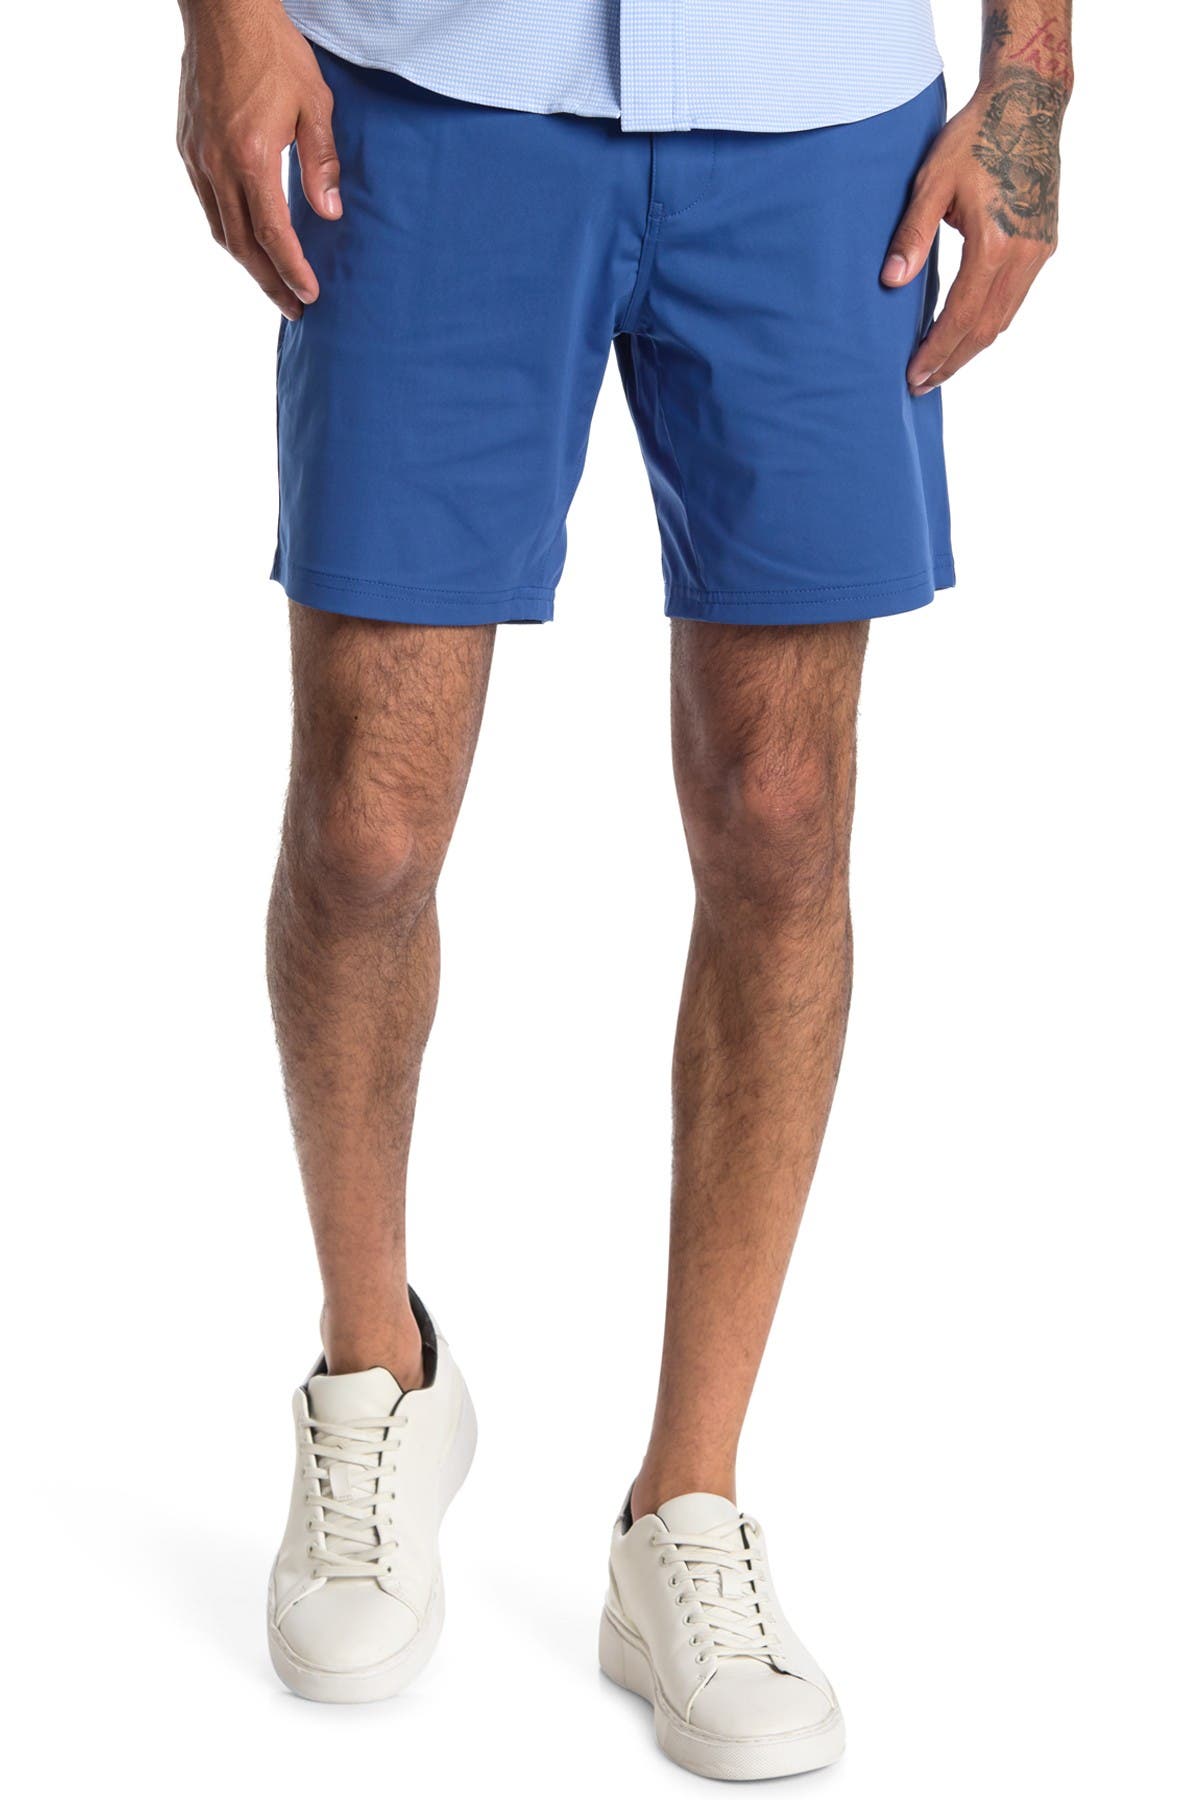 Rhone Commuter Shorts In Open Blue13